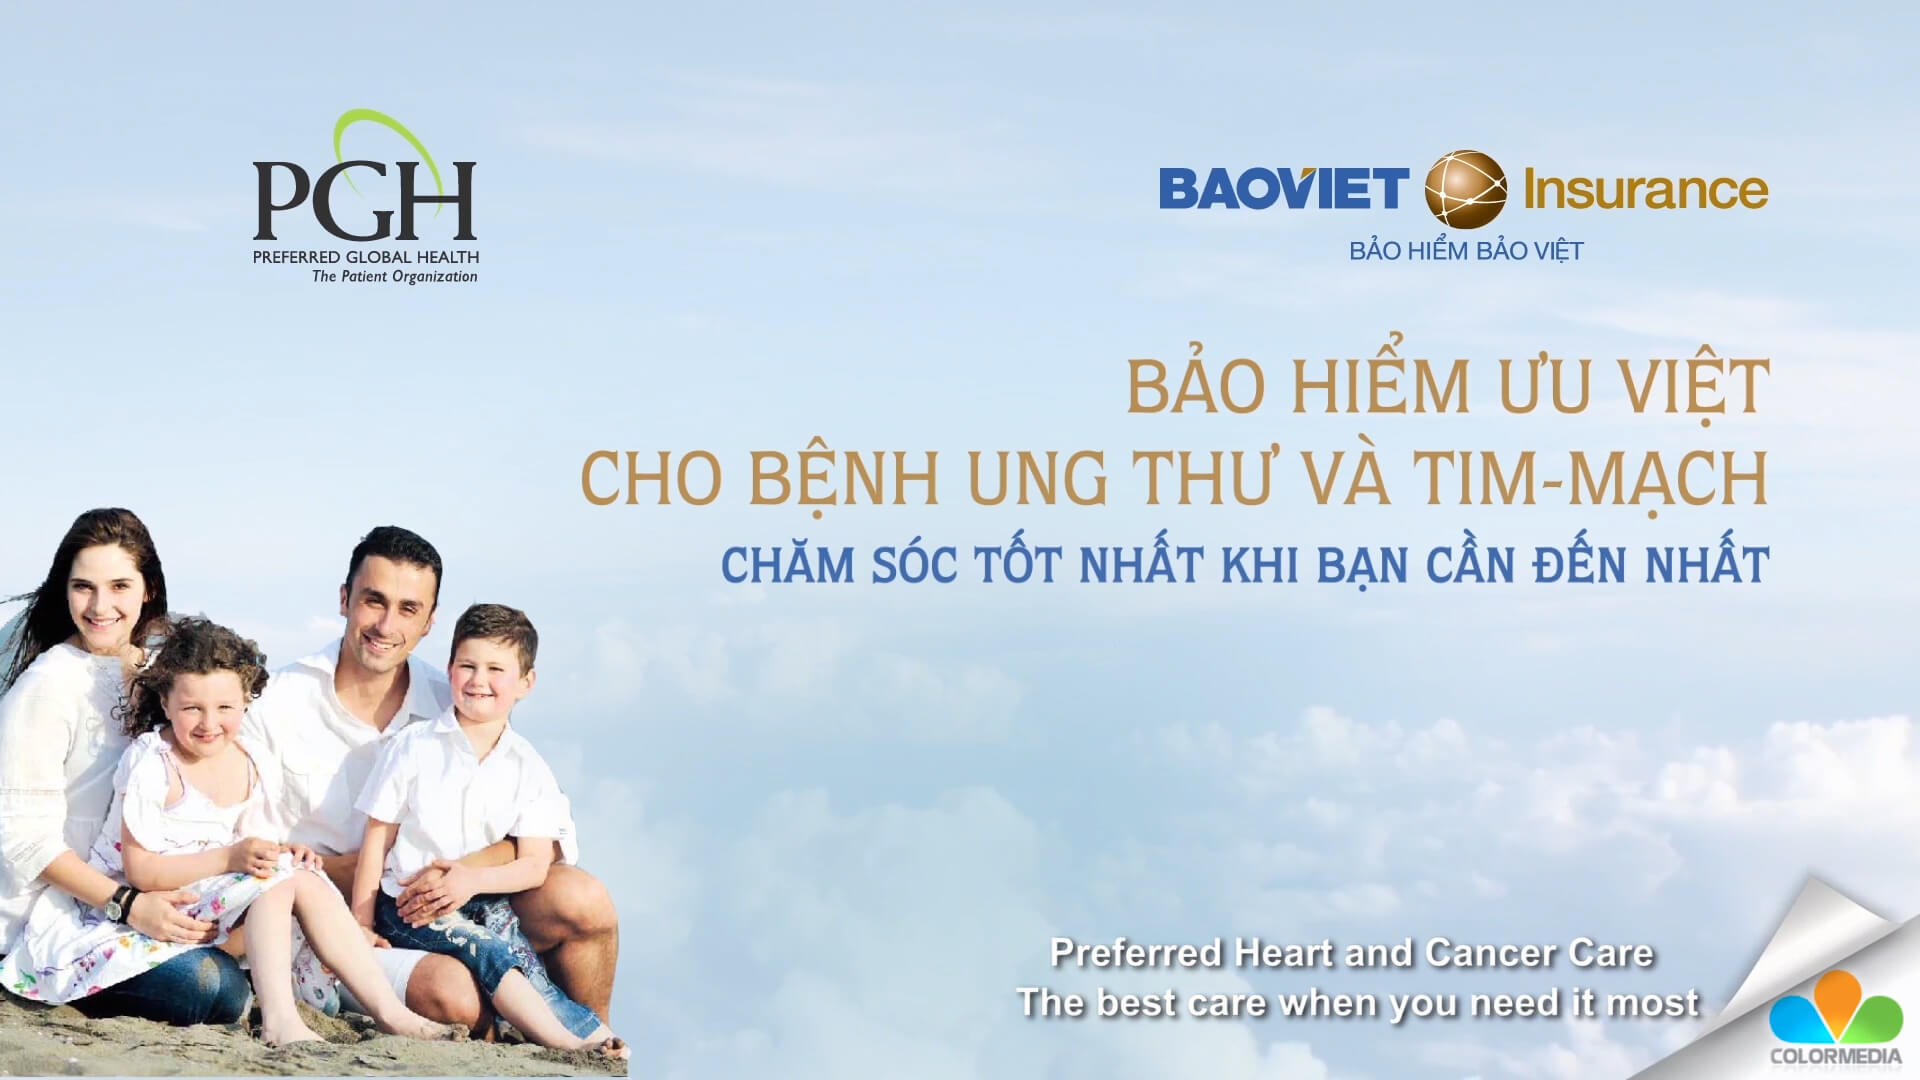 [Bao Viet Insurance] Bảo hiểm ưu việt cho bệnh ung thư và tim mạch